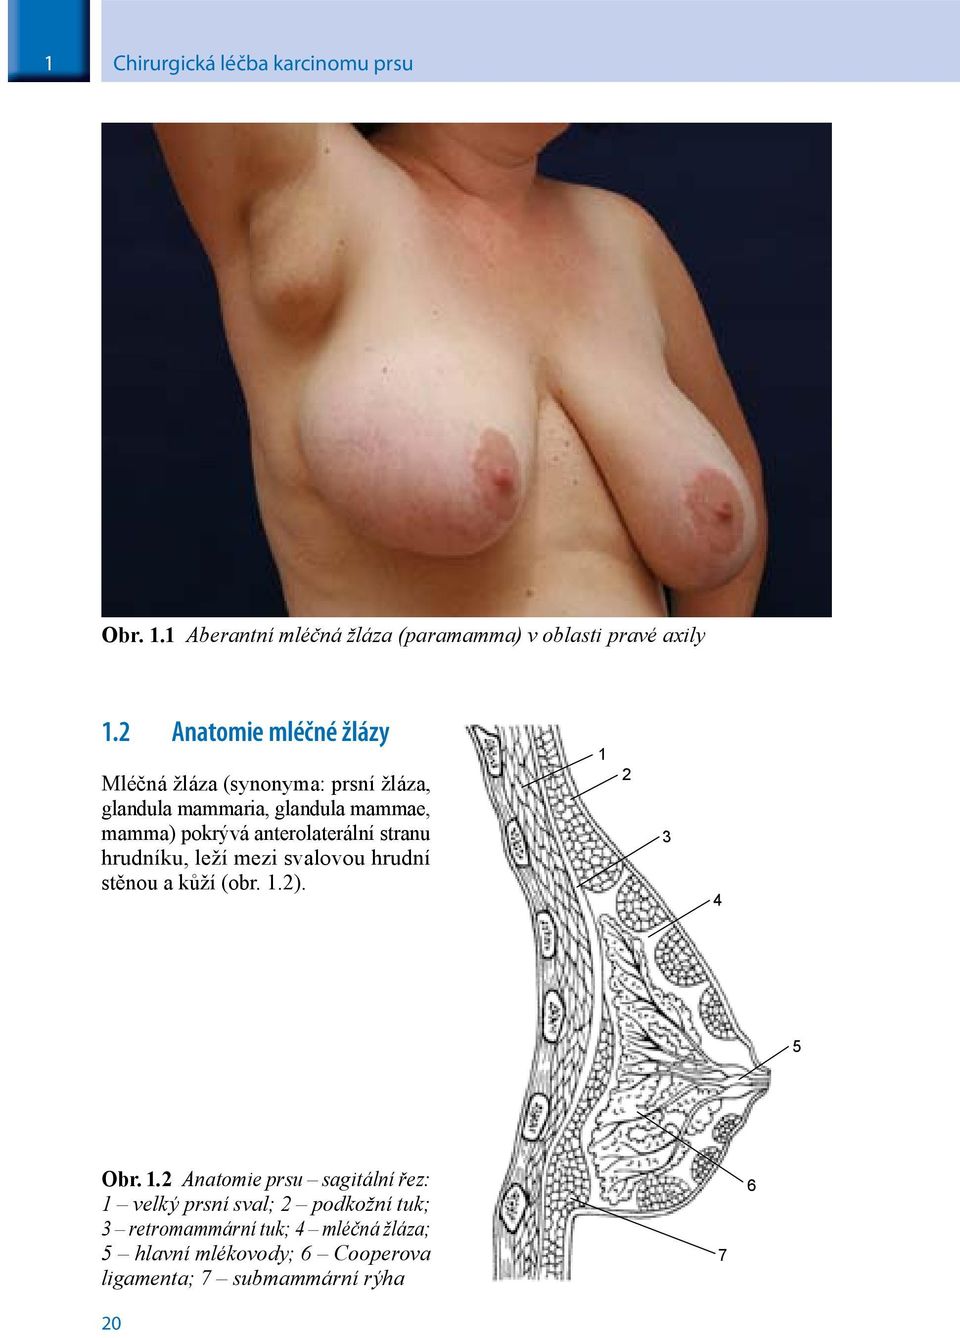 anterolaterální stranu hrudníku, leží mezi svalovou hrudní stěnou a kůží (obr. 1.